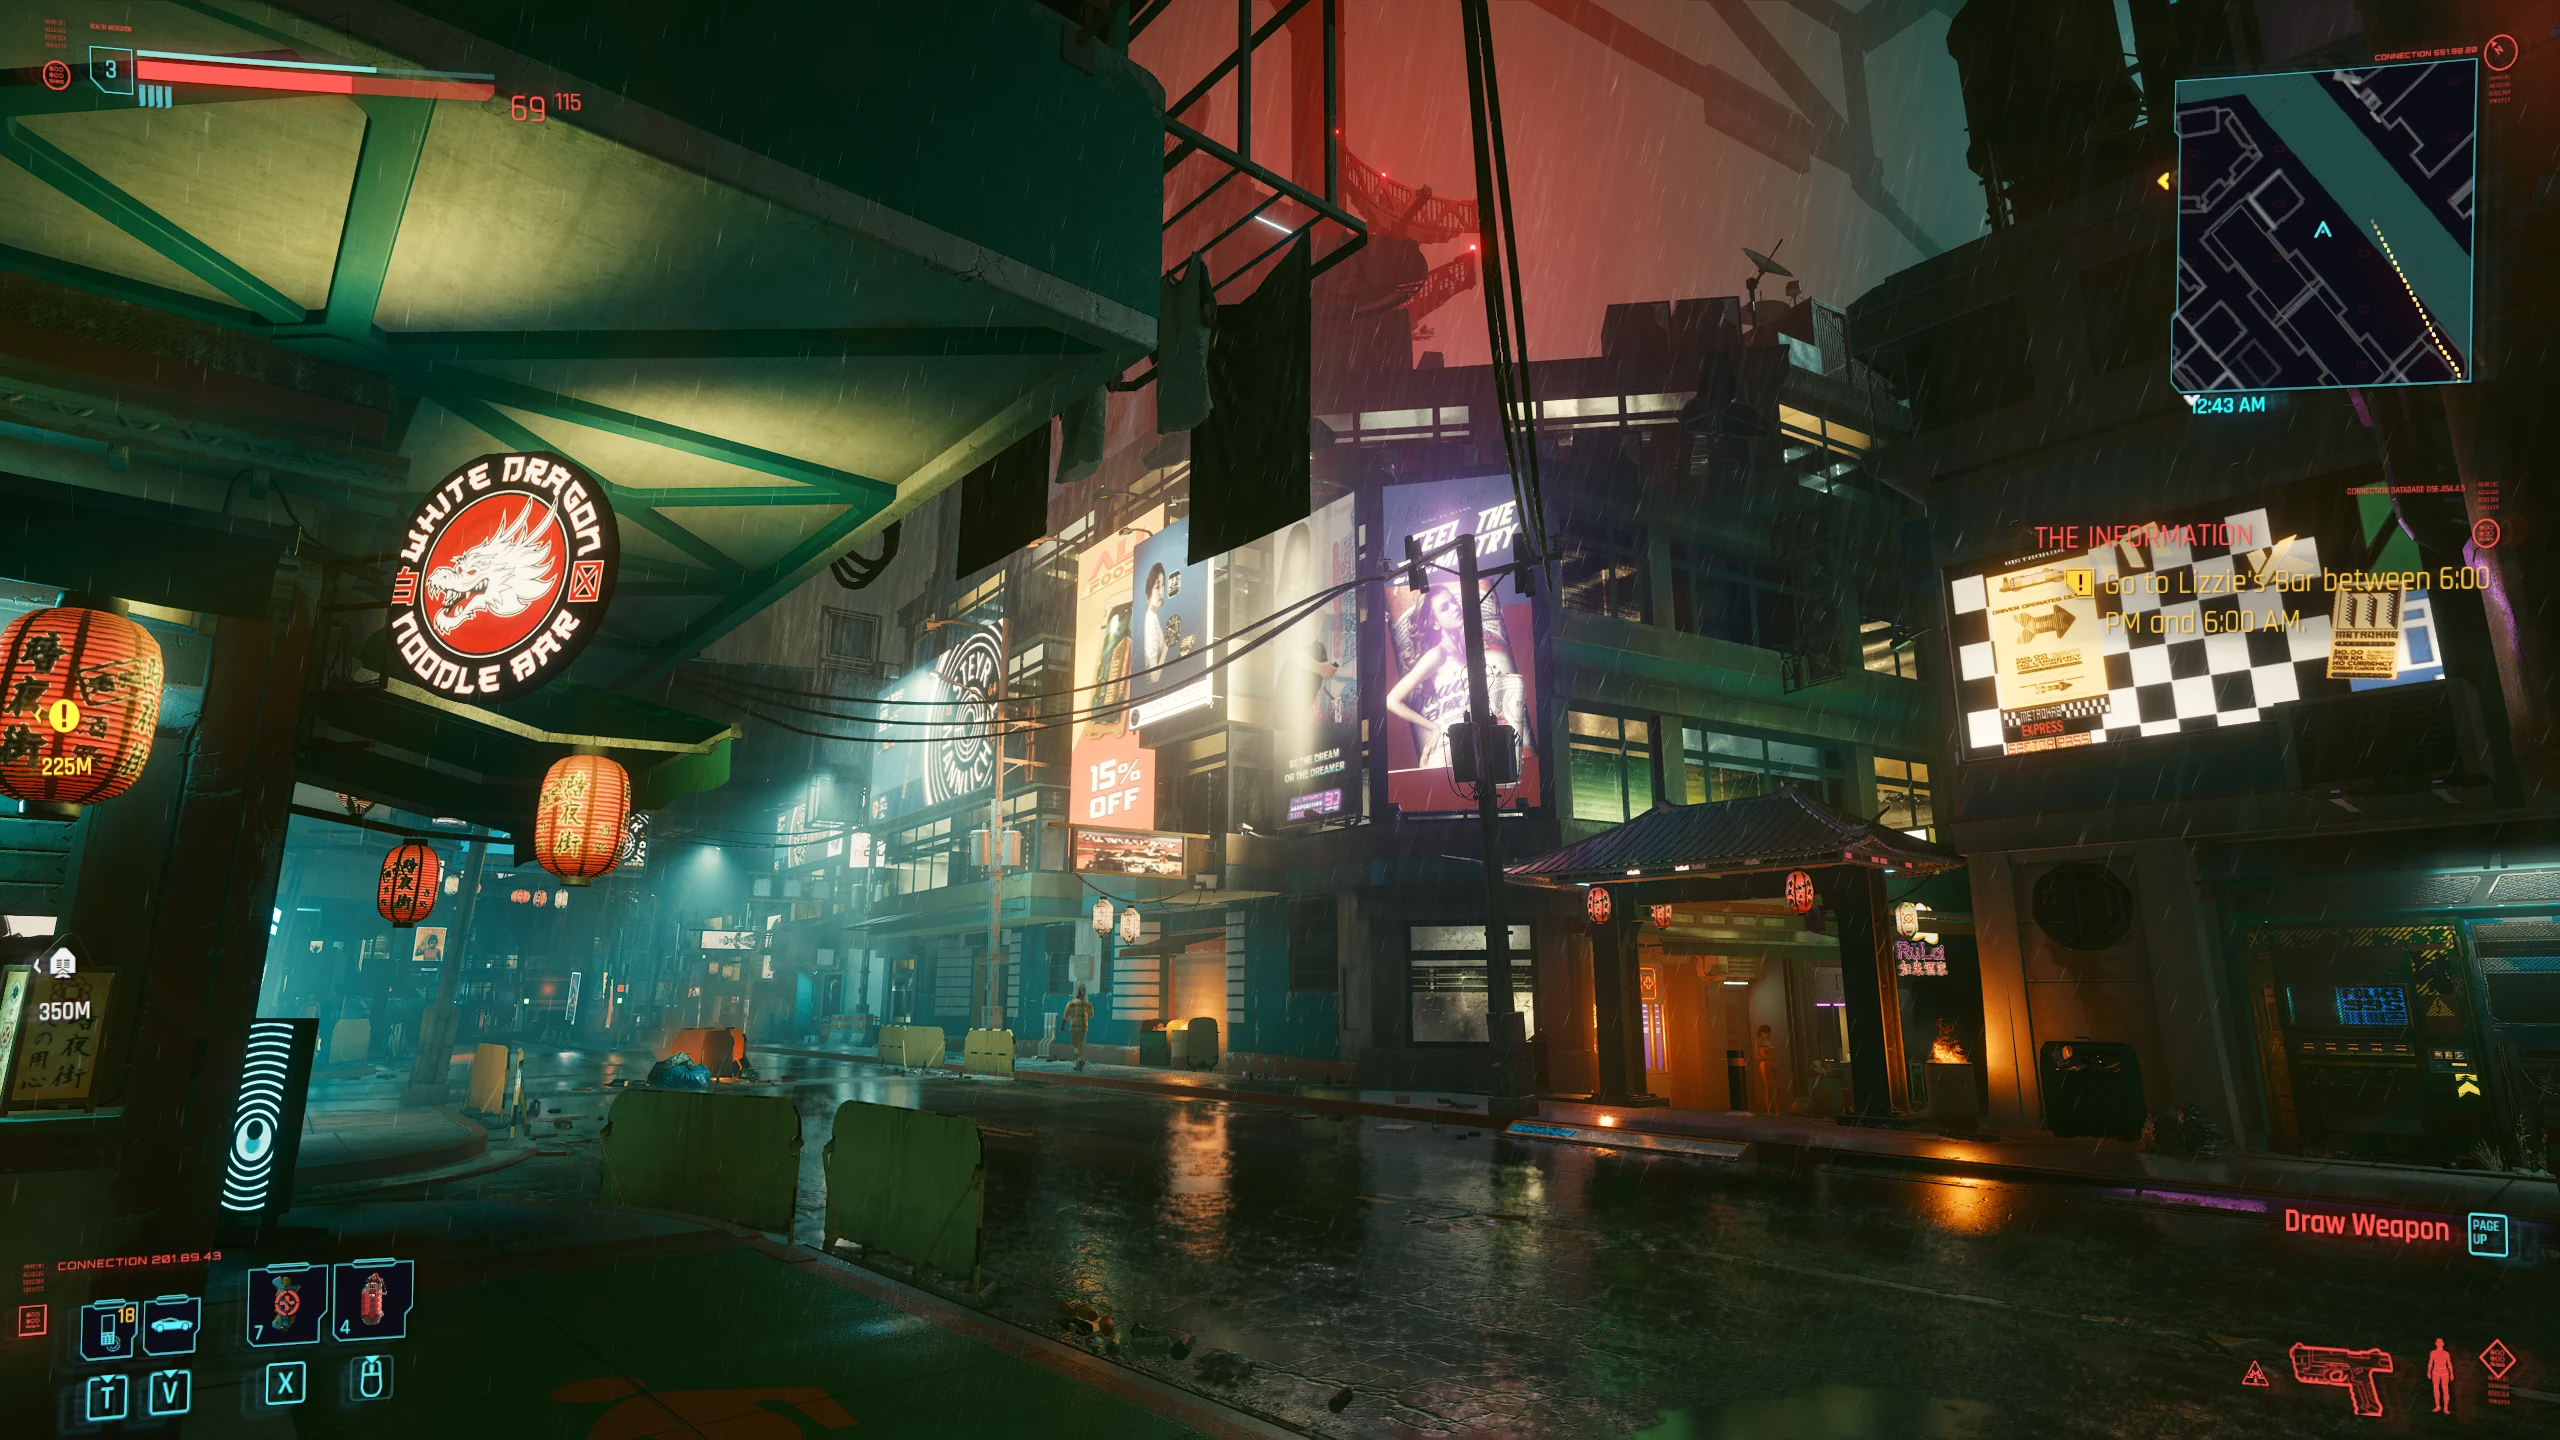 Cyberpunk 2077 Blade Runner Textures Mod [Wallpaper] : r/cyberpunkgame